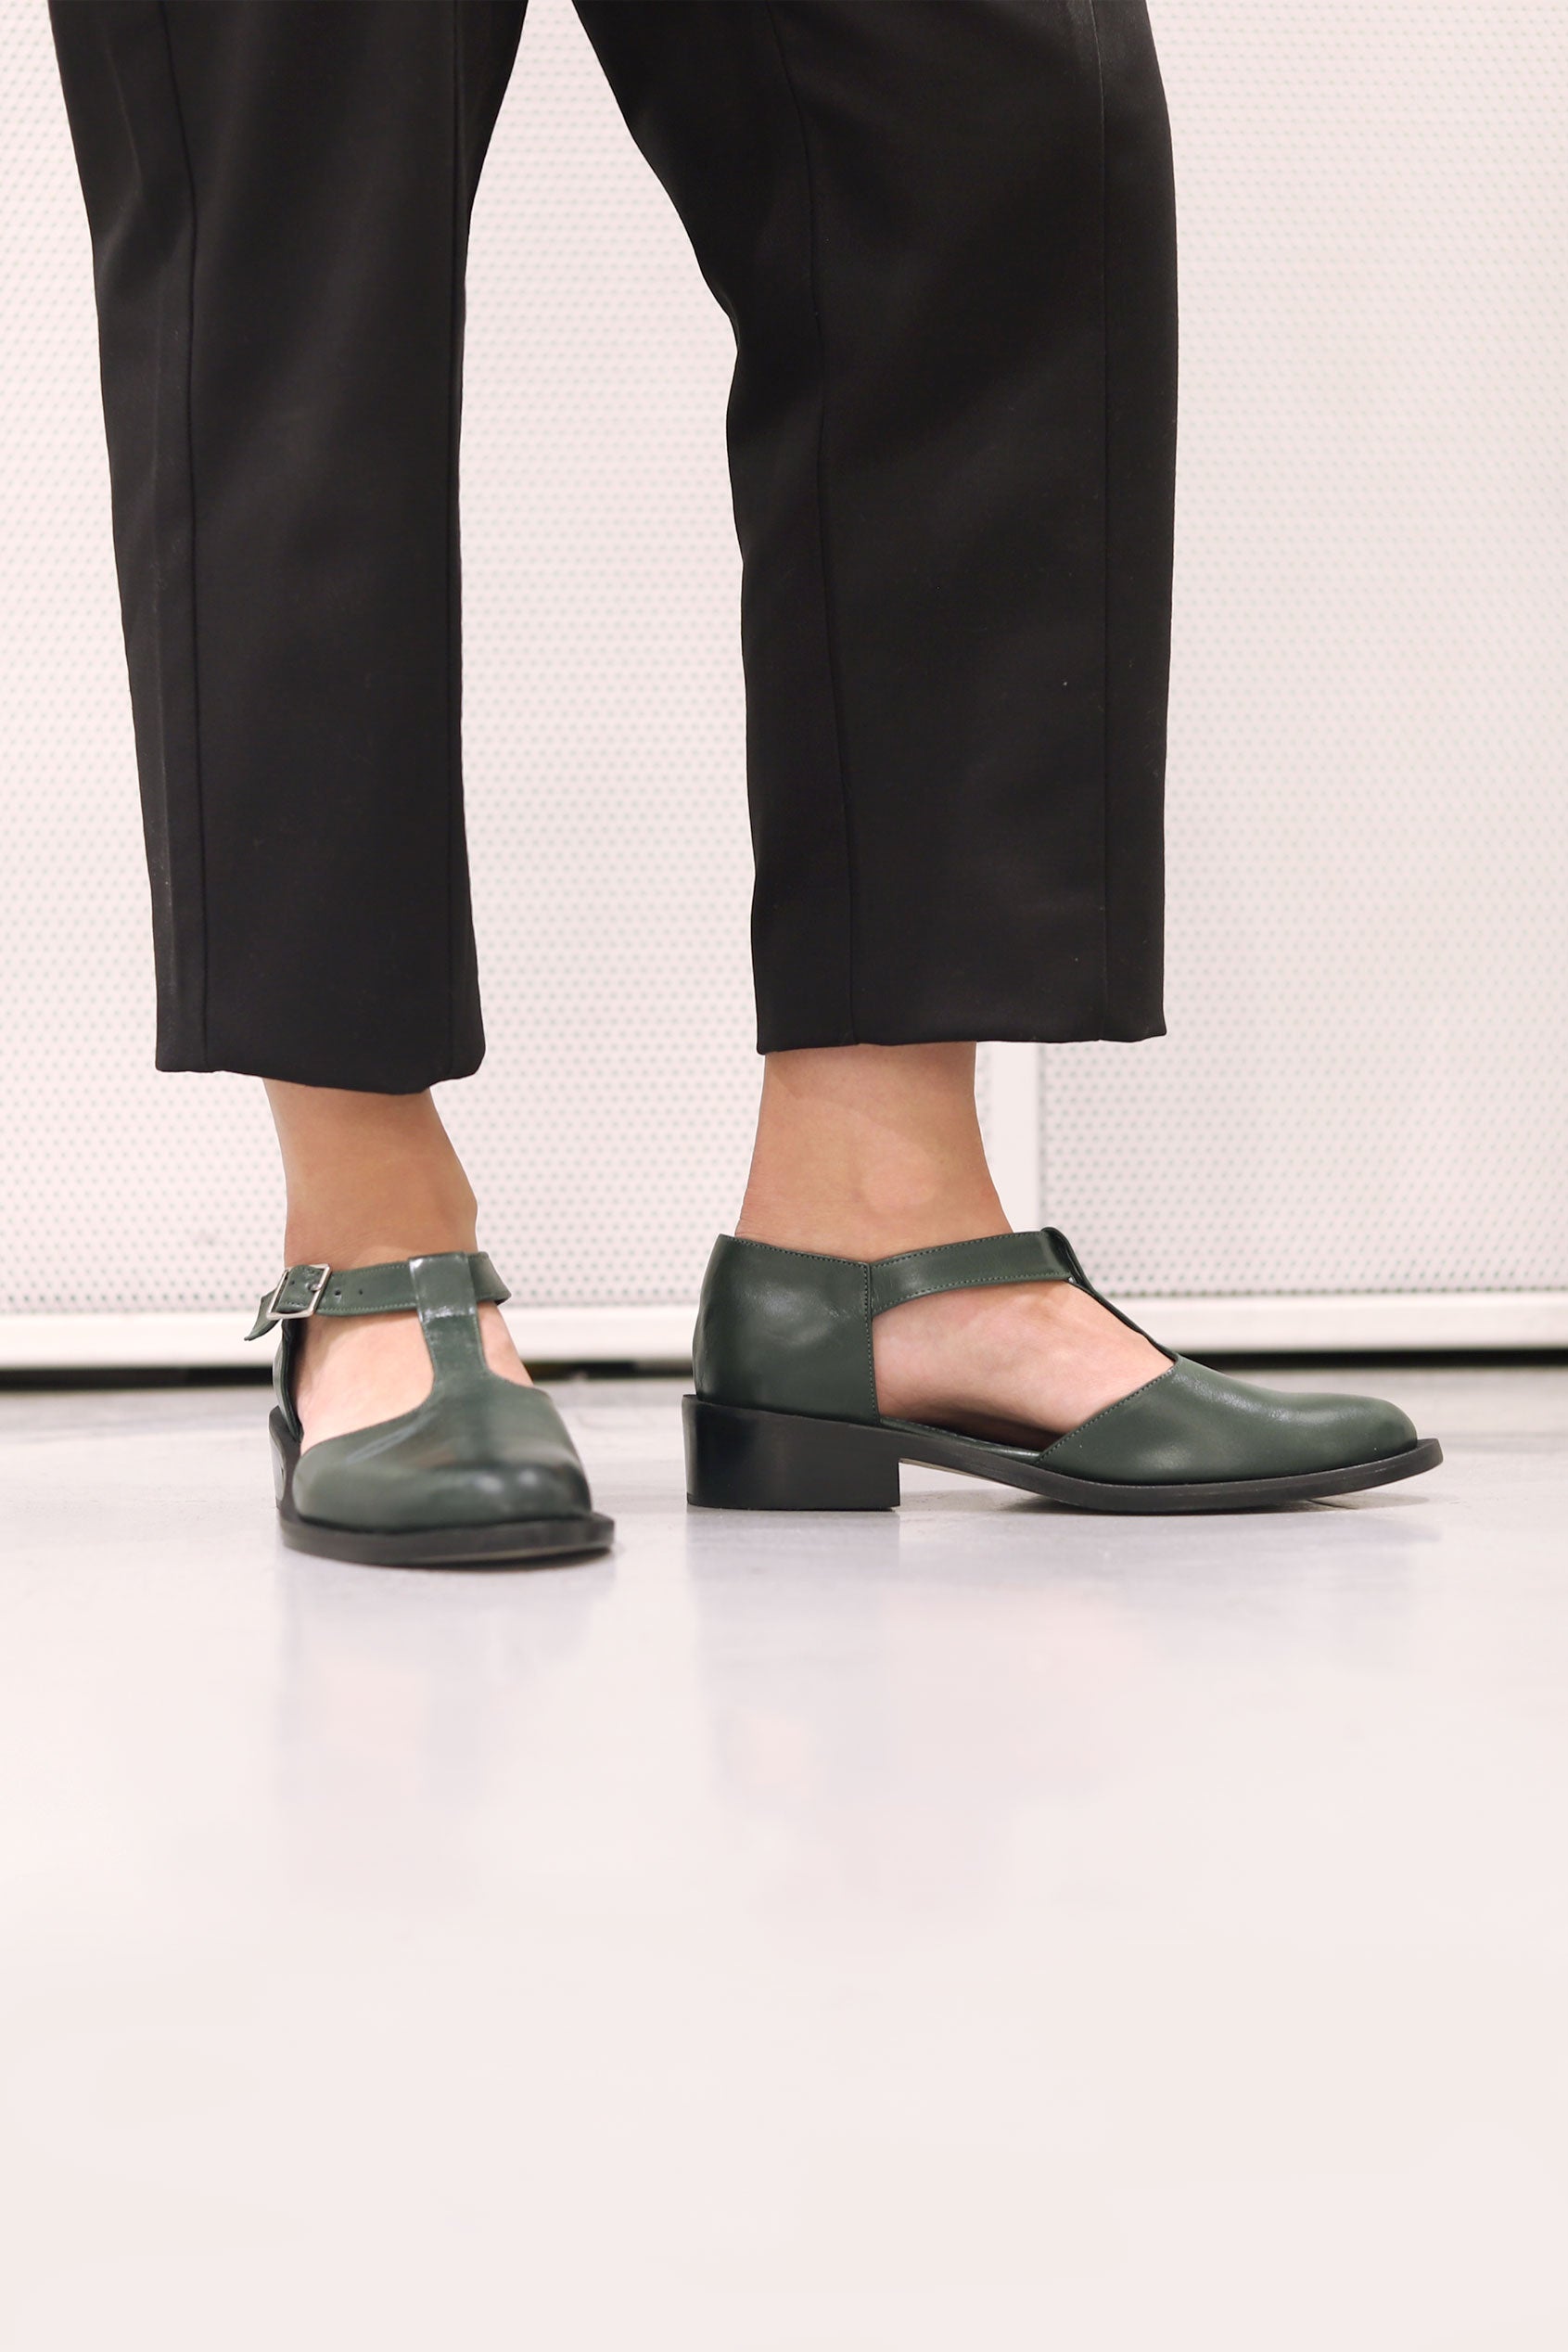 Zapato Palqui Verde